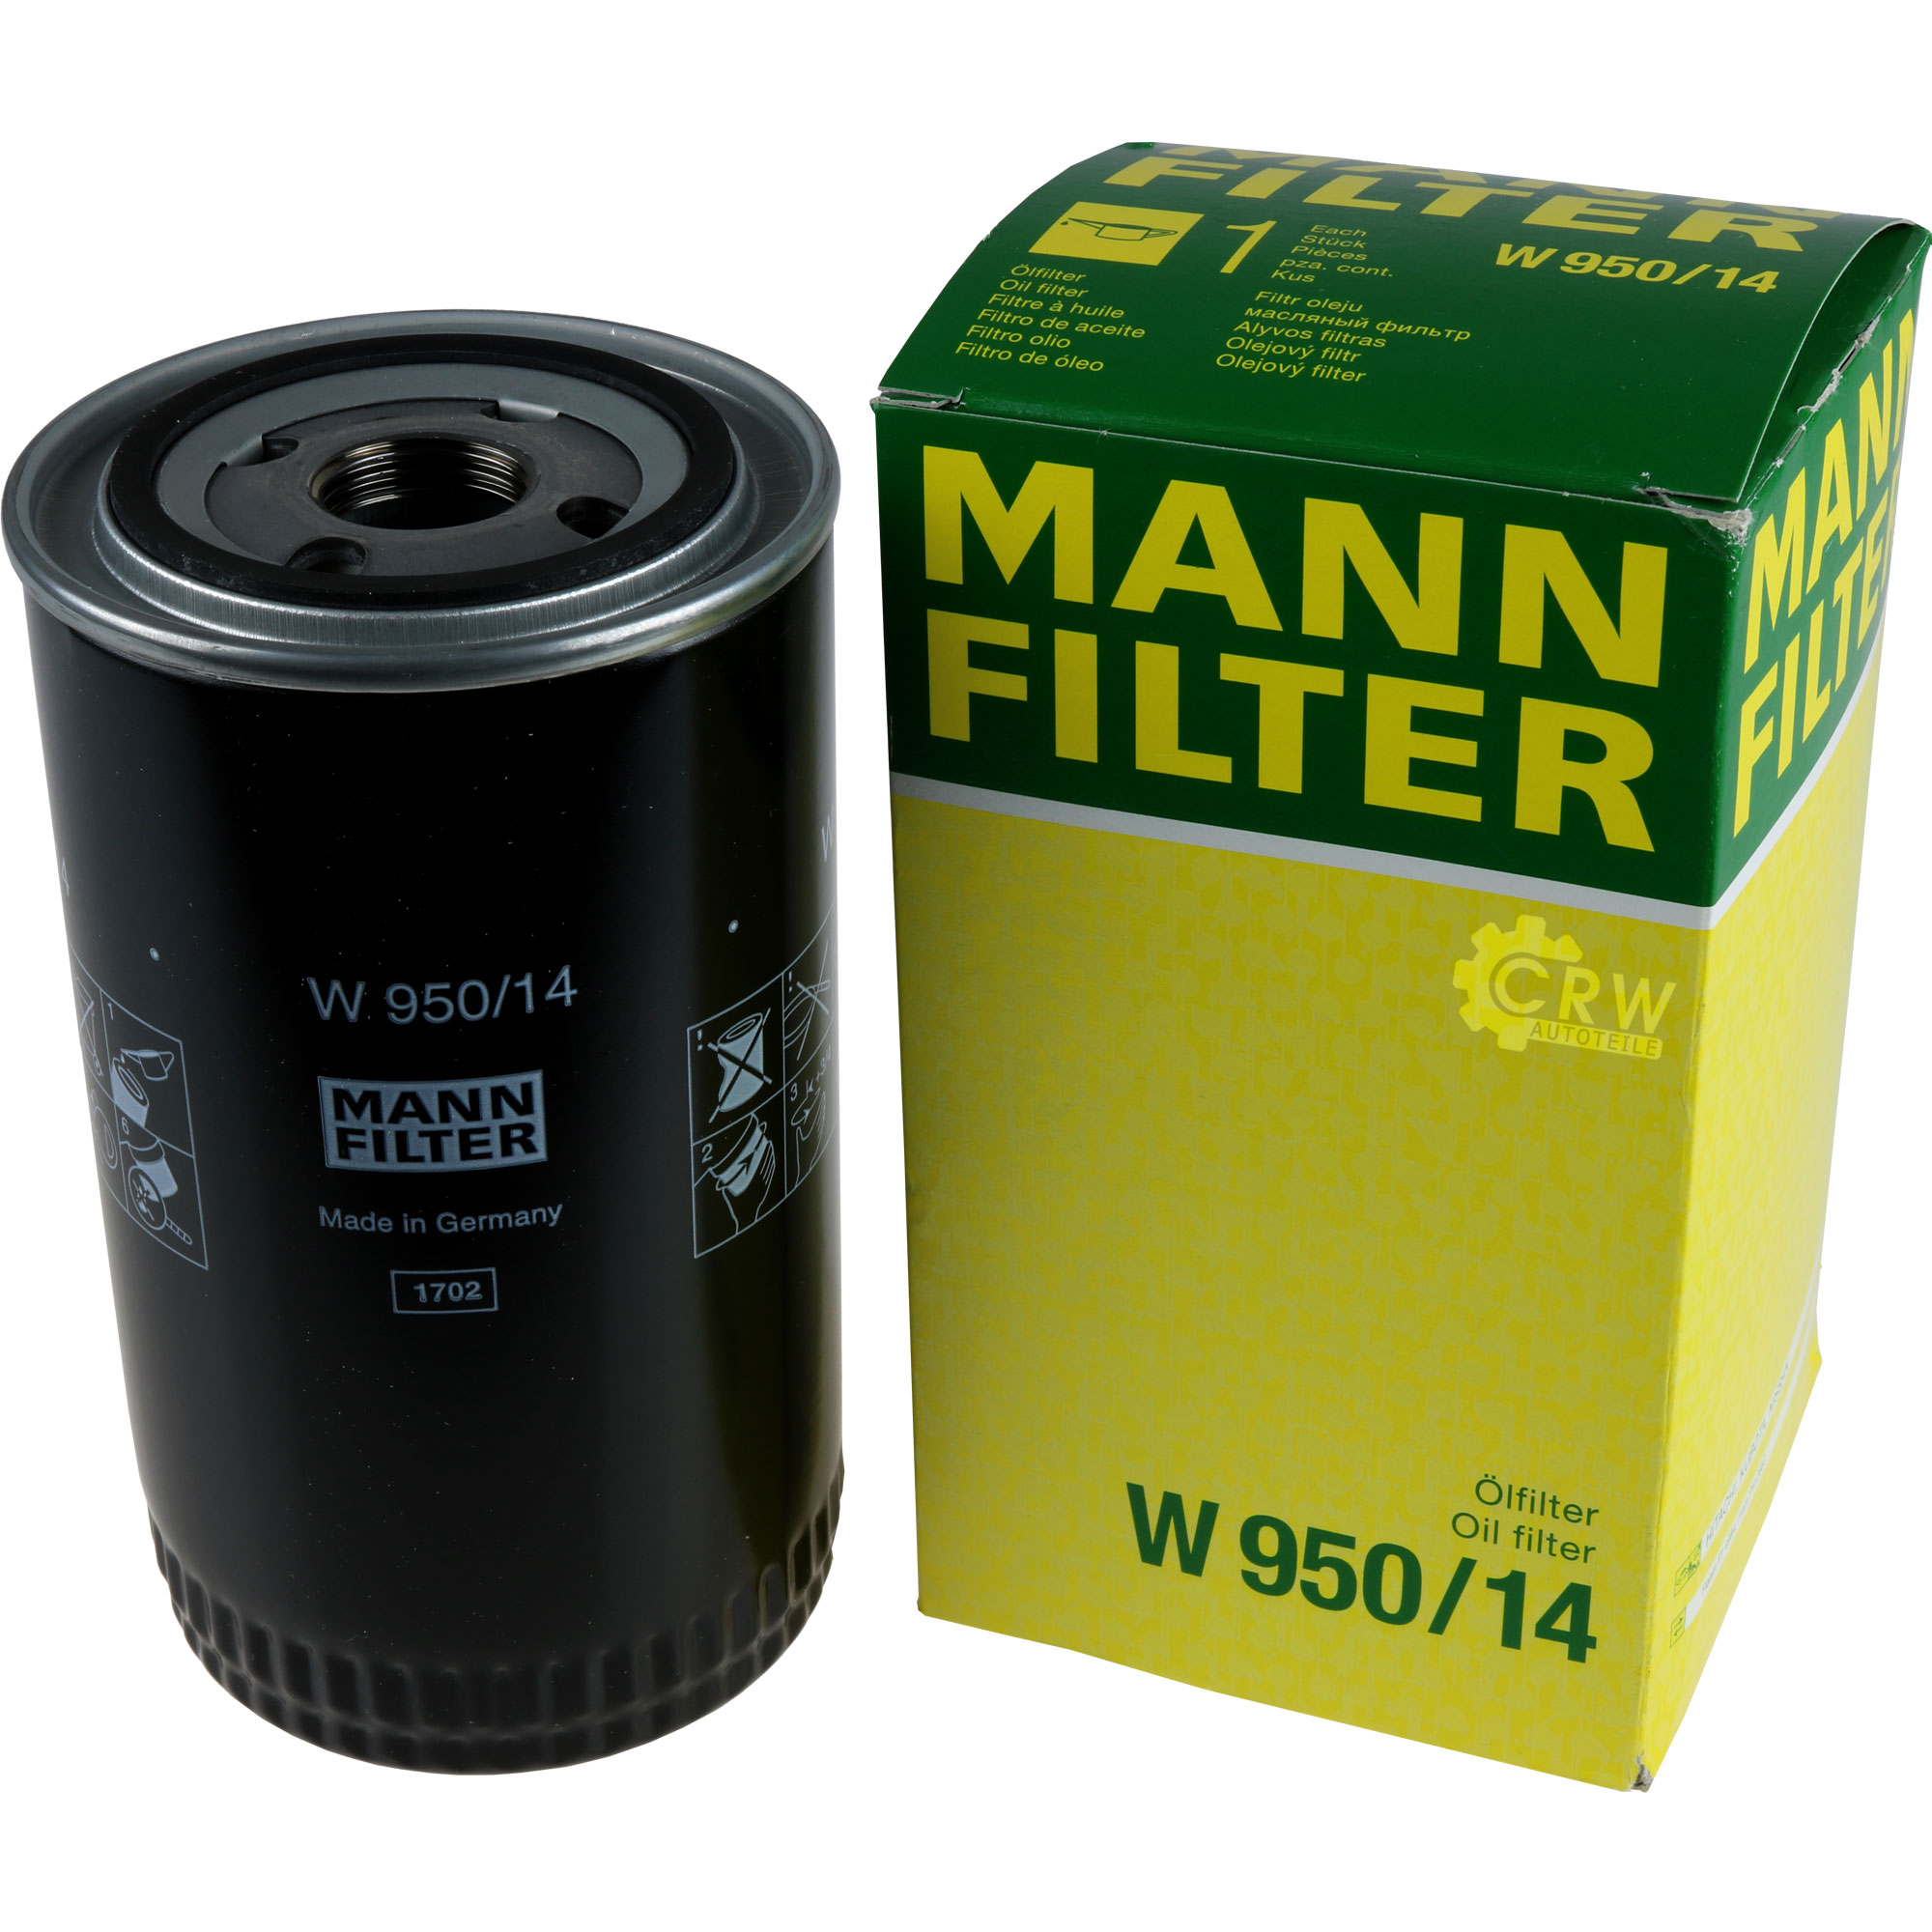 MANN-FILTER Ölfilter W 950/14 Oil Filter